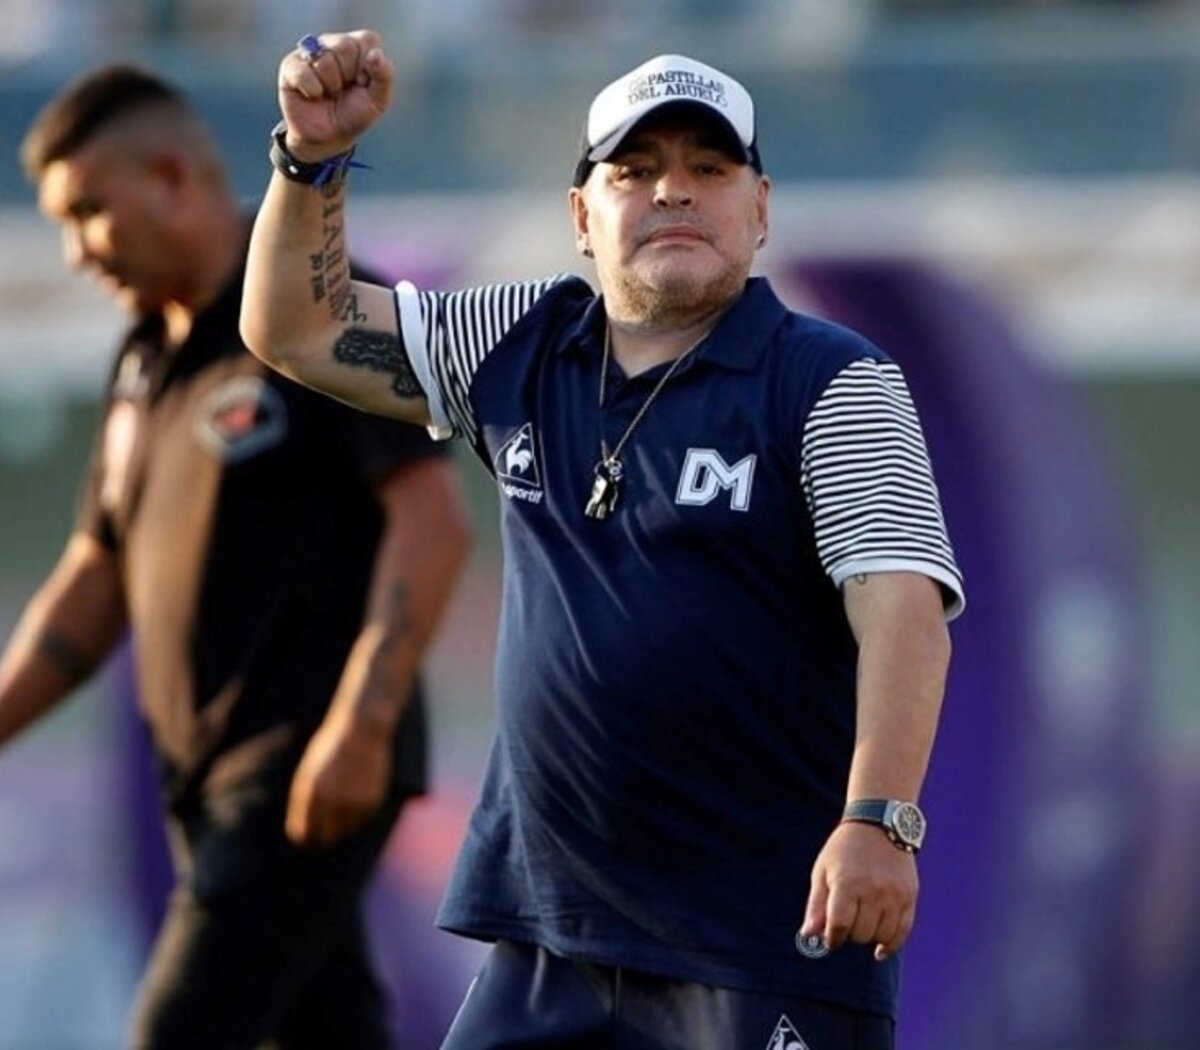 La salud de Diego Maradona: nuevo parte médico | "La noche la pasó bien,  está evolucionando como queríamos" | Página12